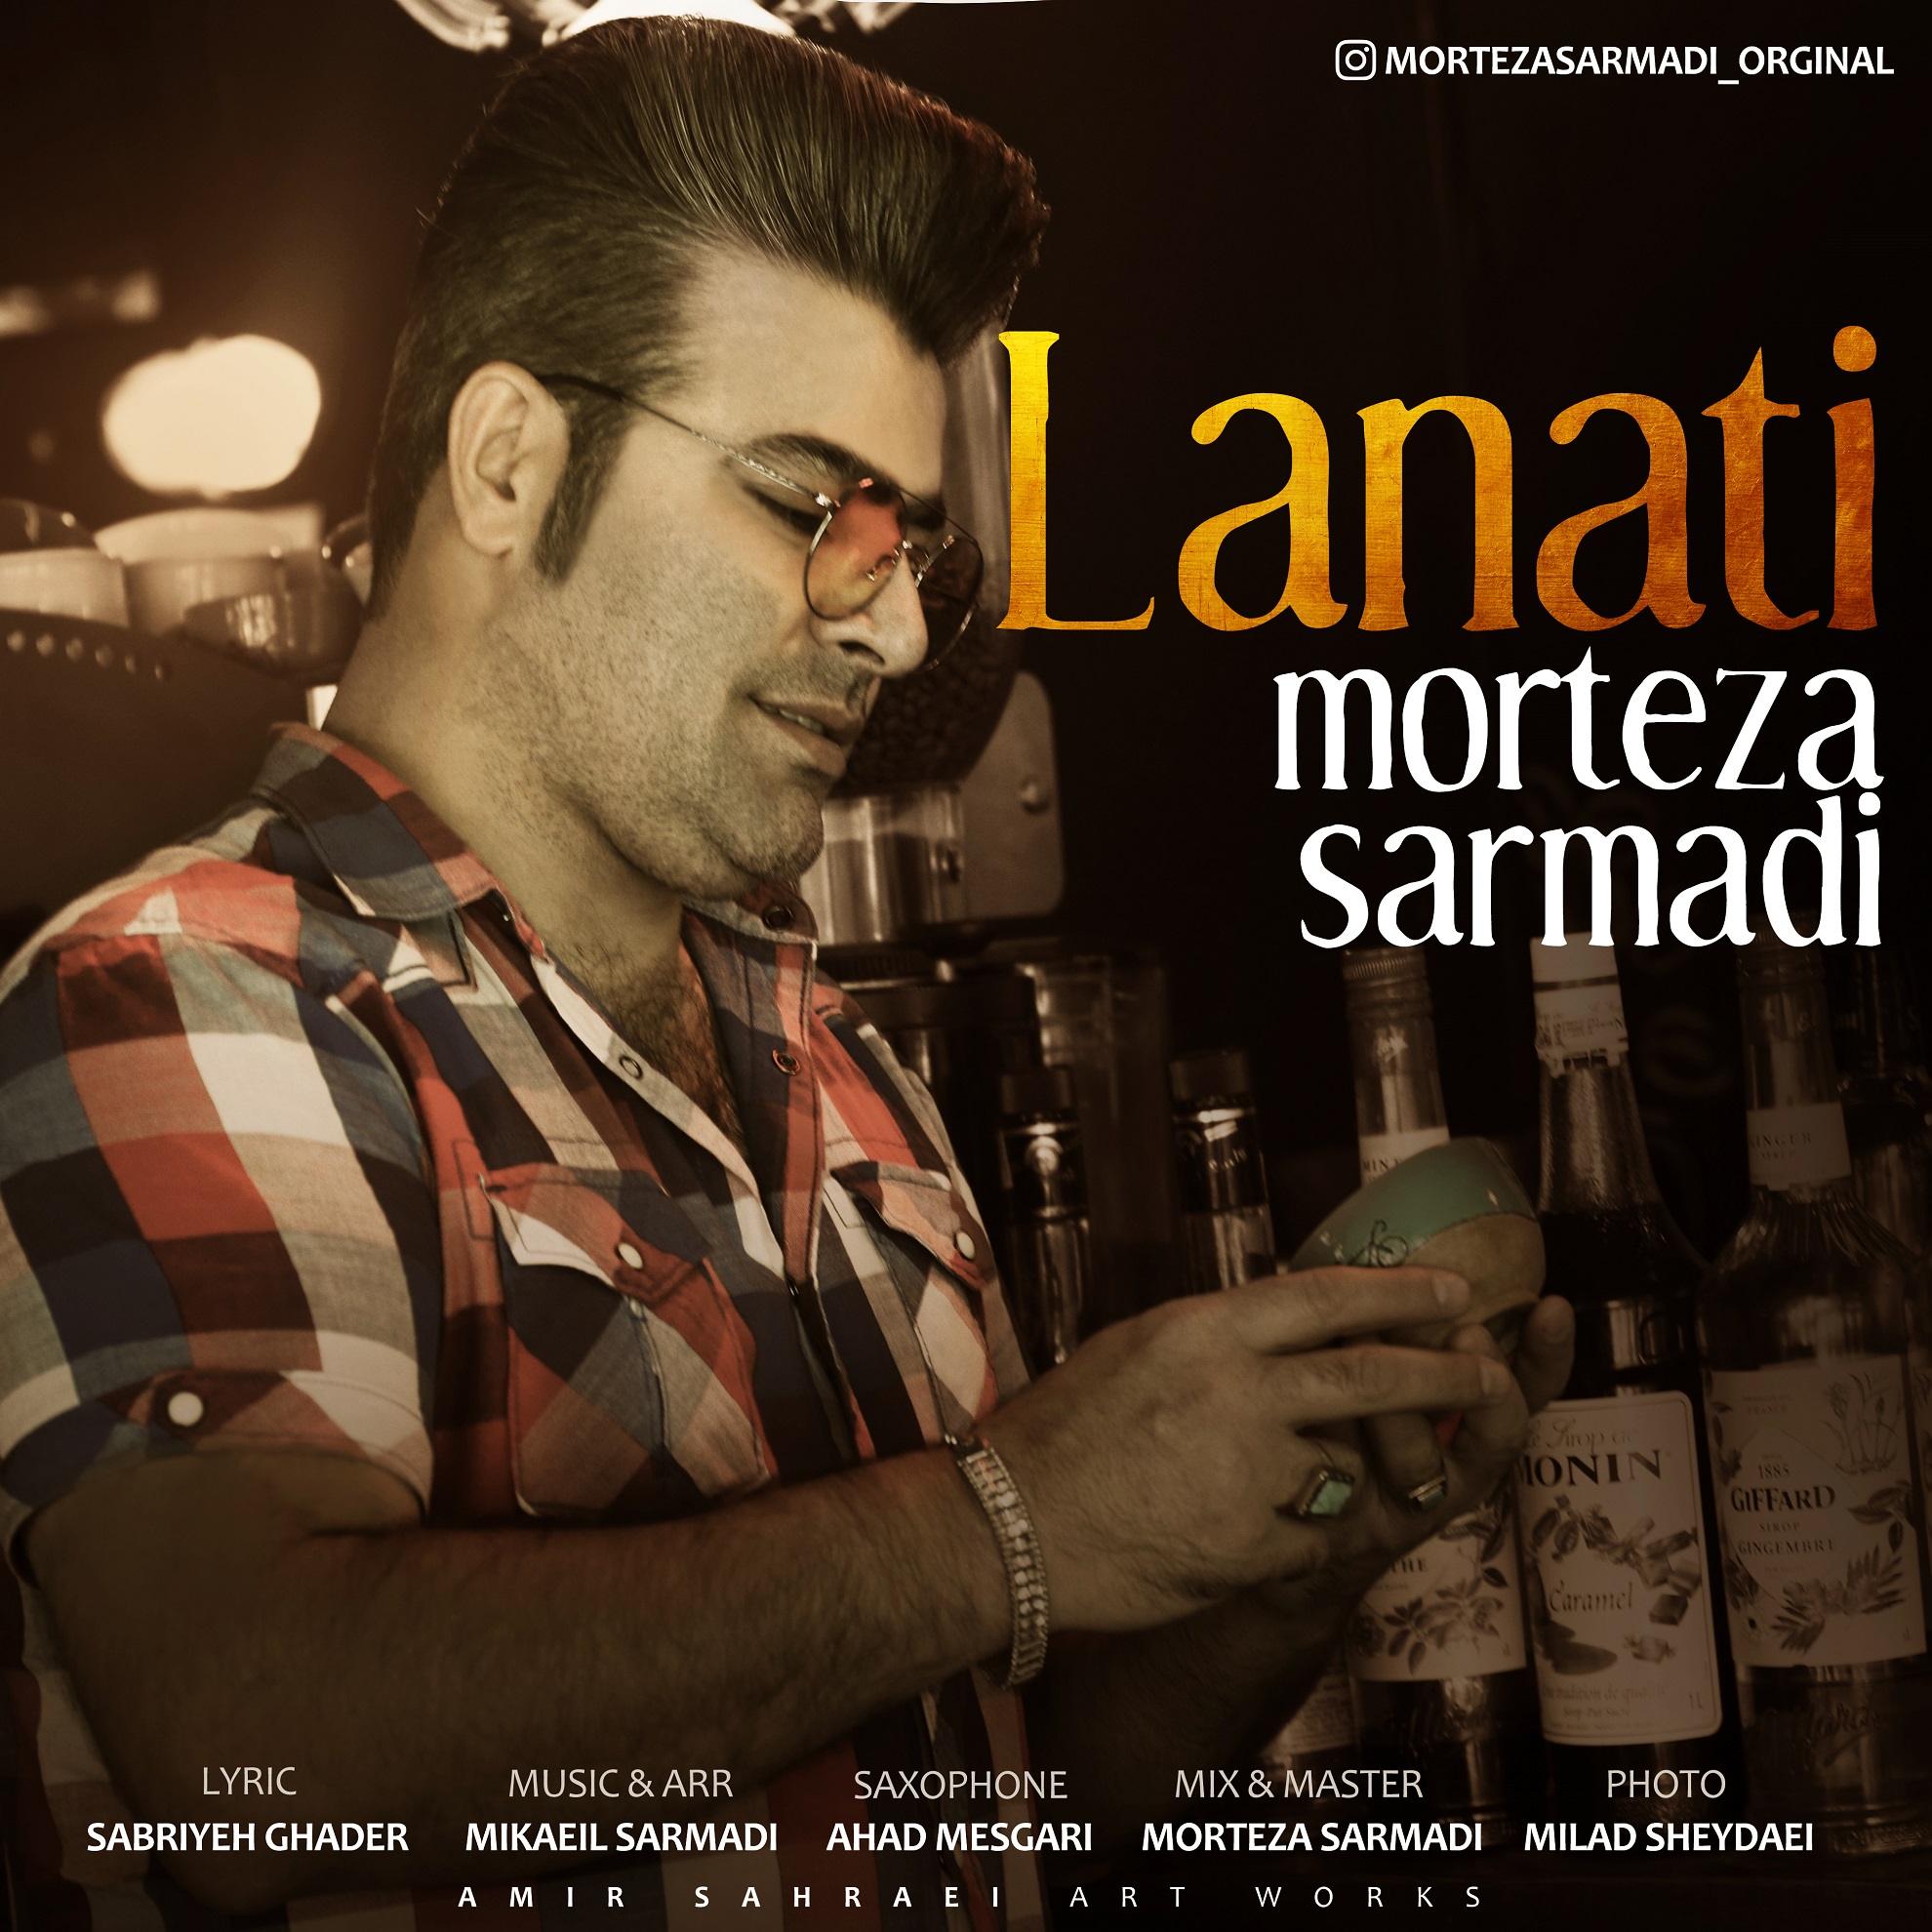  دانلود آهنگ جدید مرتضی سرمدی - لعنتی | Download New Music By Morteza Sarmadi - Lanati